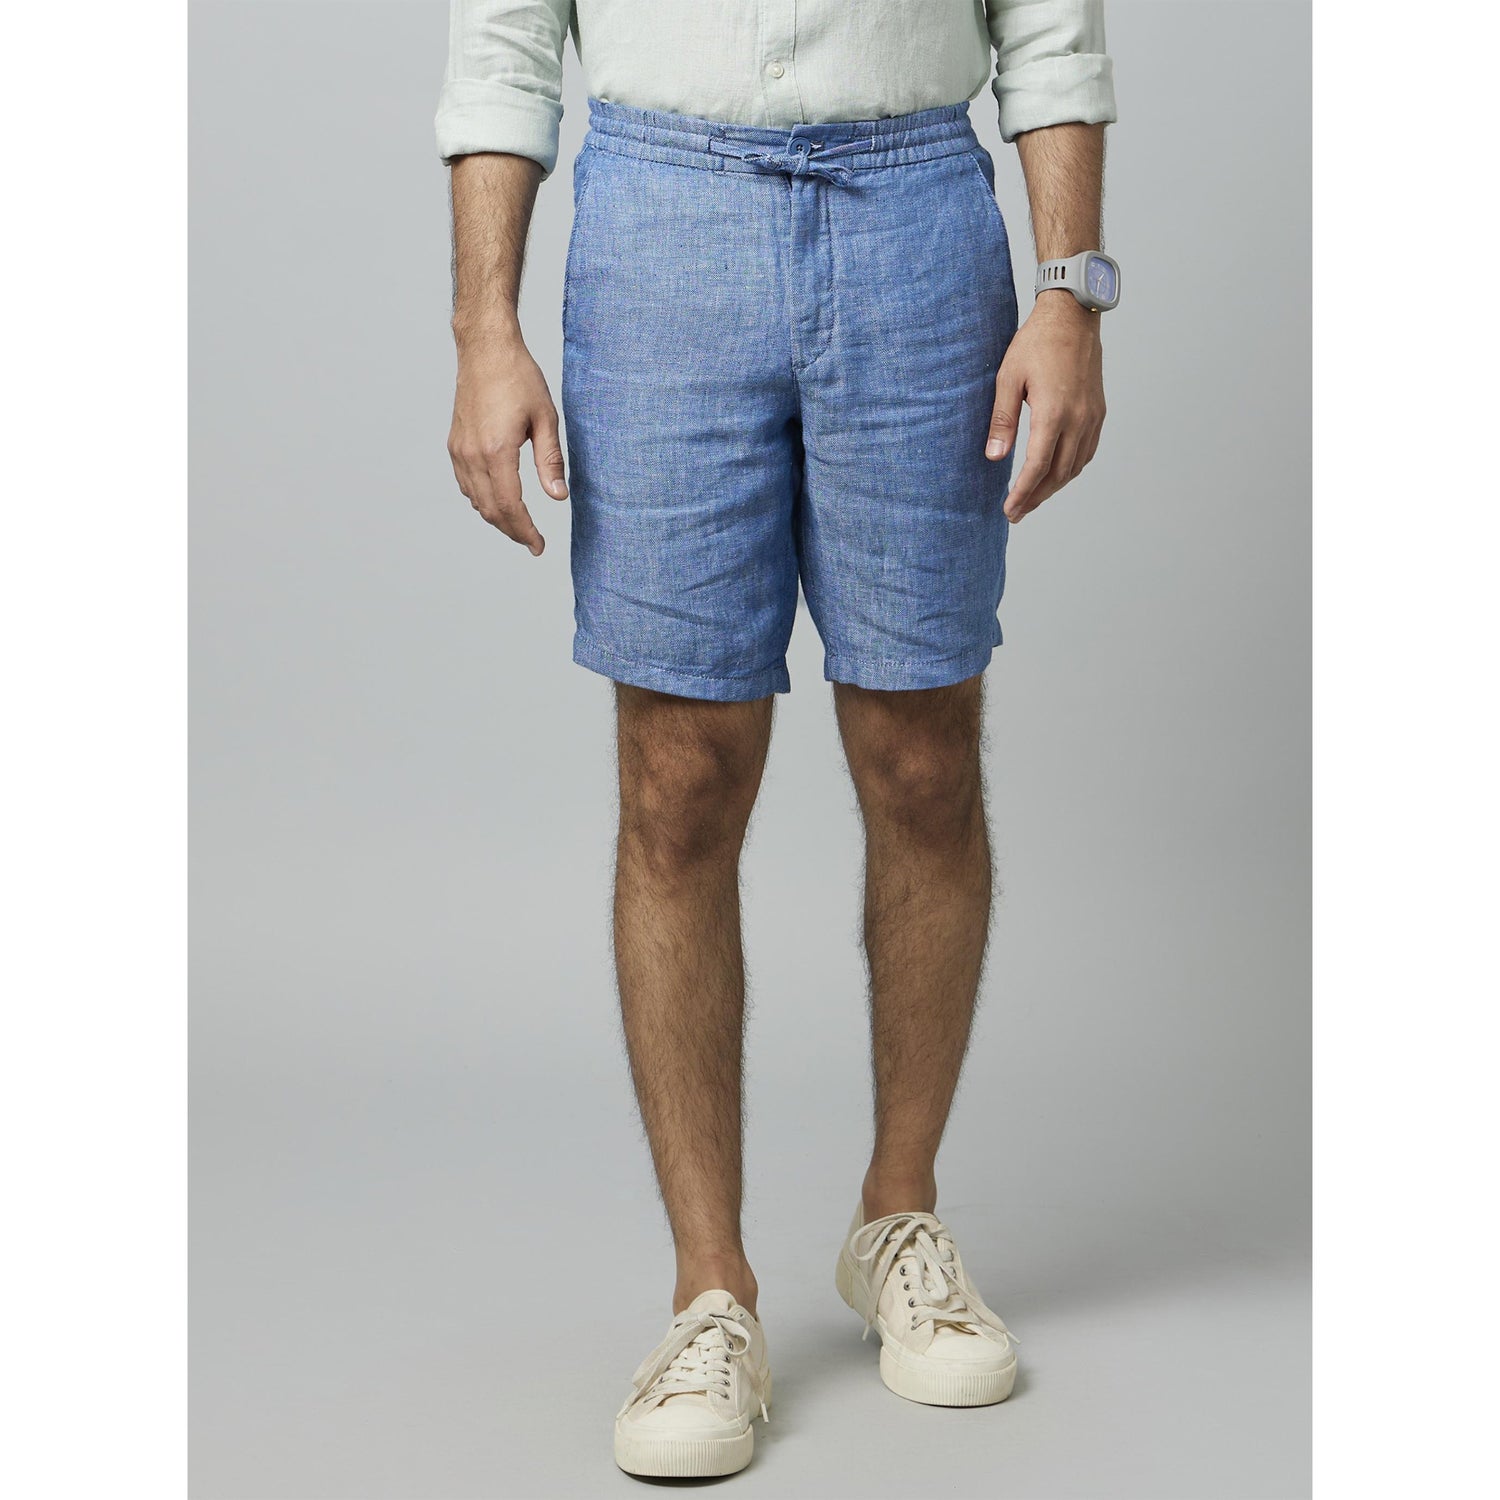 Blue Solid Self Design Mid-Rise Linen Shorts (DOLINUSBM)